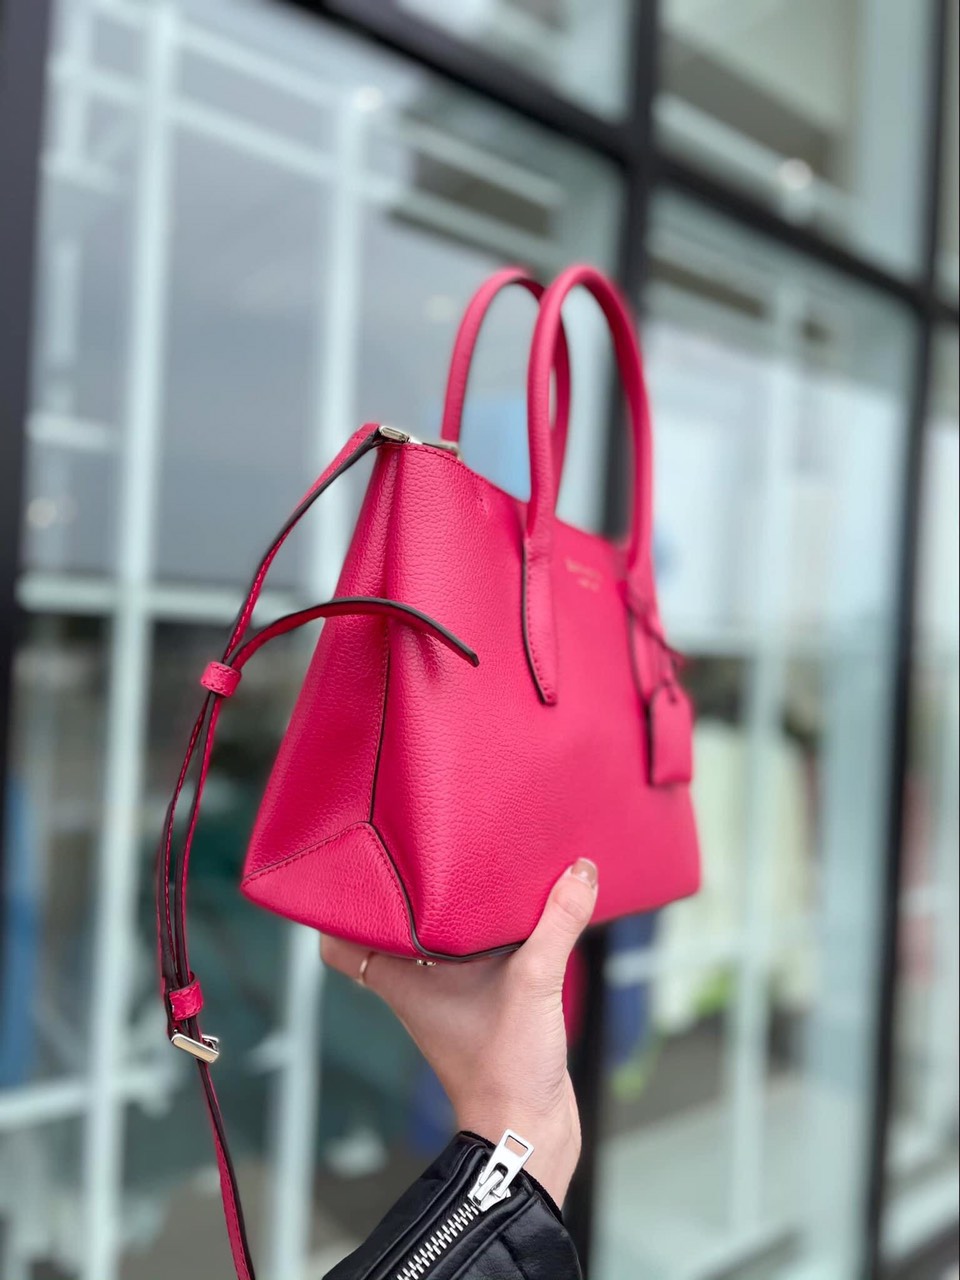 Túi kate small top zip satchel màu đỏ hồng 24*19*14cm WKRU6114